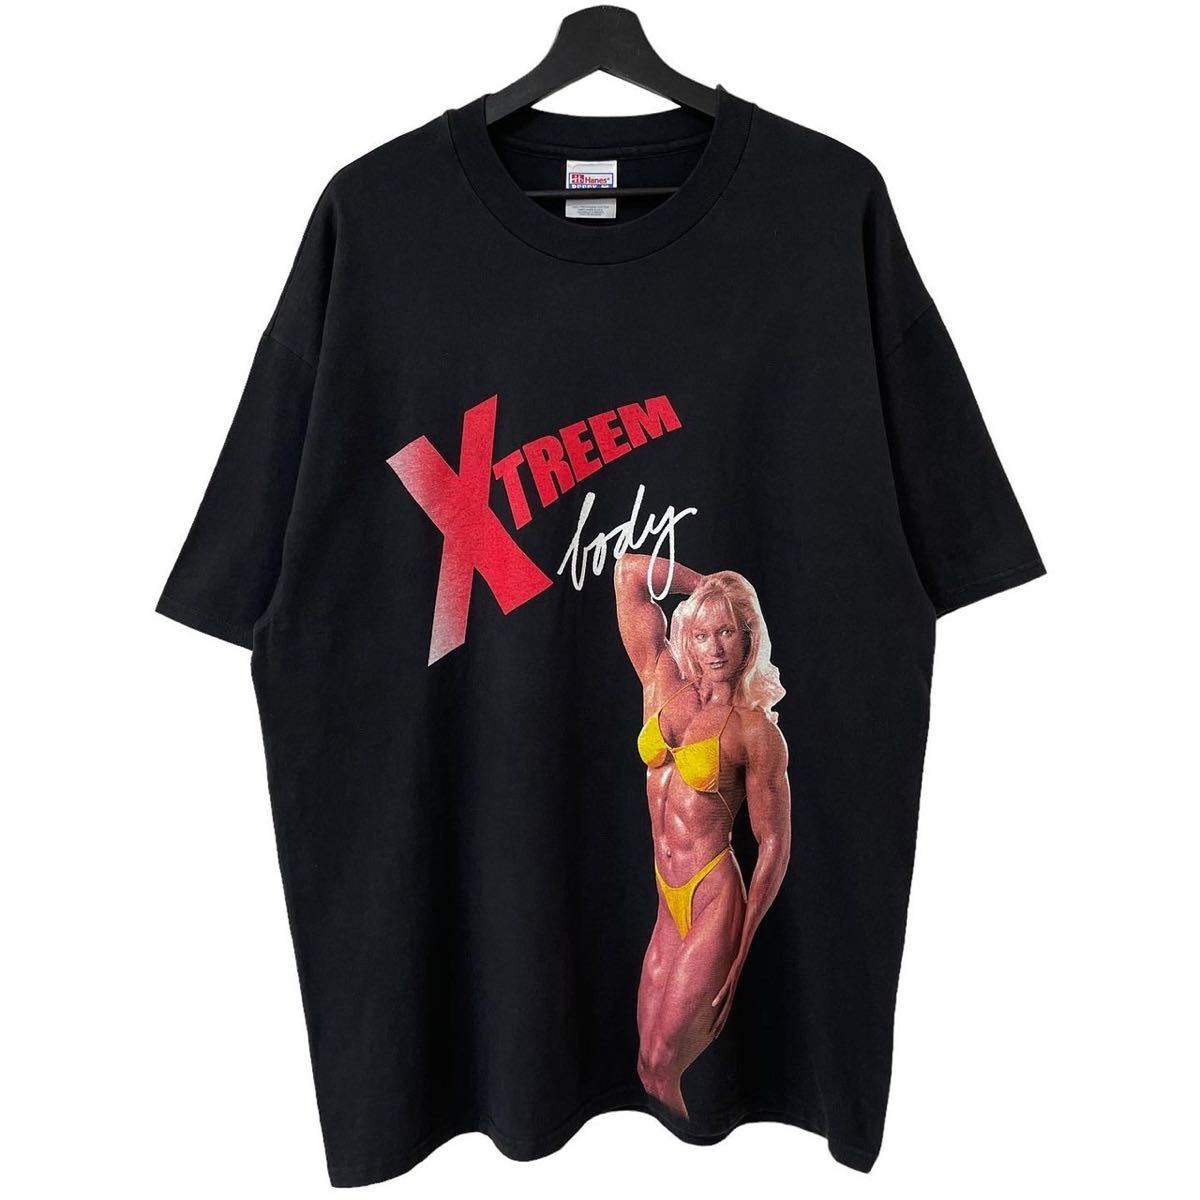 ■激レア■90s USA製 XTREEM CAMERA 女性ボディービルダー フォト 企業 Tシャツ XL アート カメラ ビンテージ_画像1